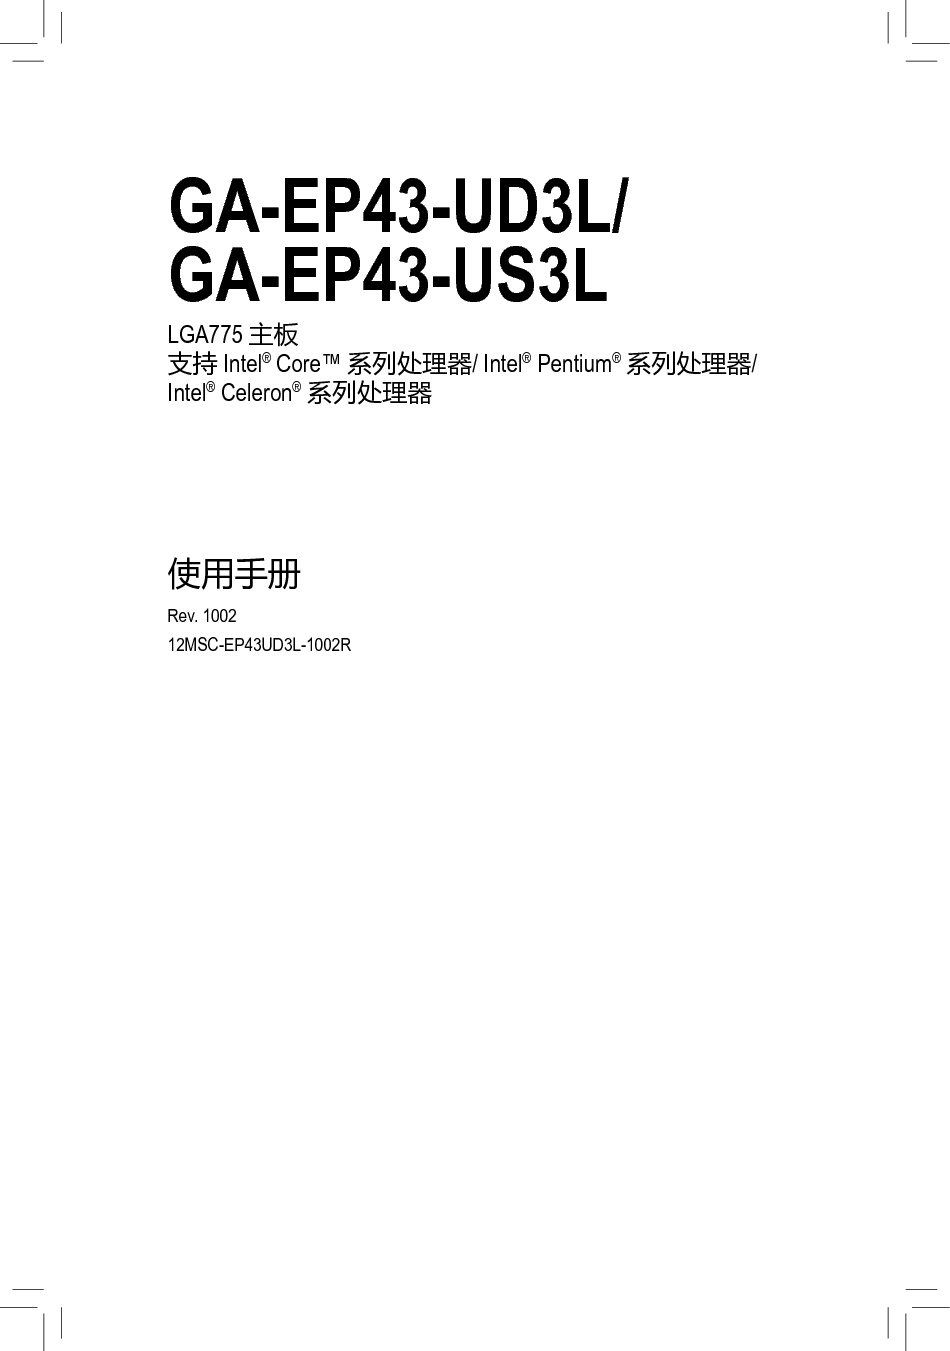 技嘉 Gigabyte GA-EP43-UD3L 使用手册 封面